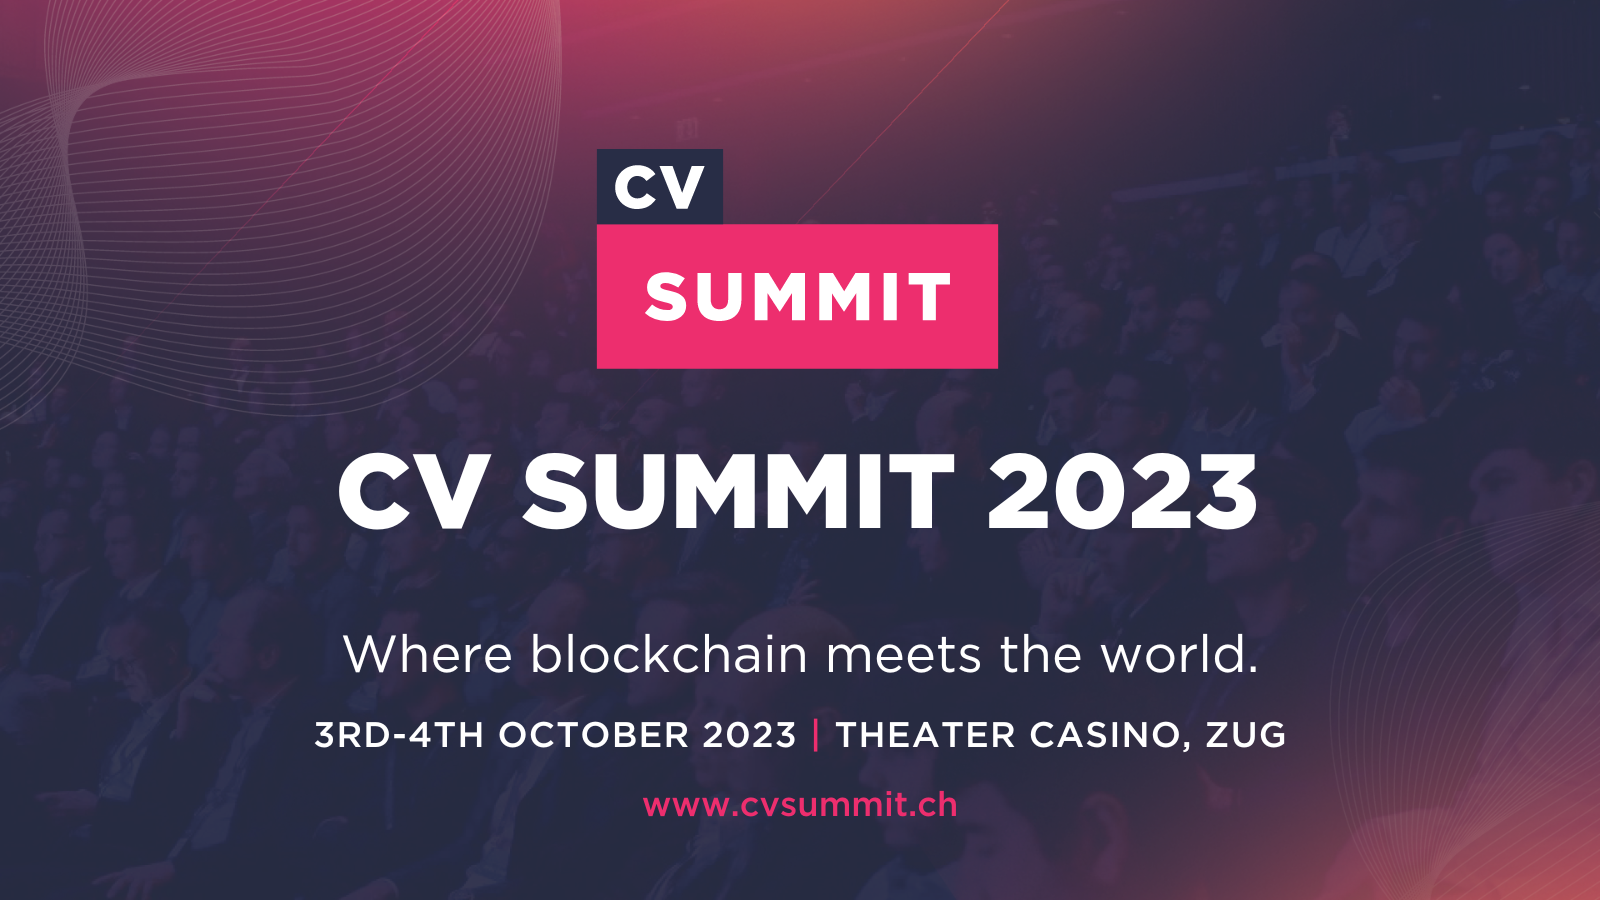 CV Summit 2023